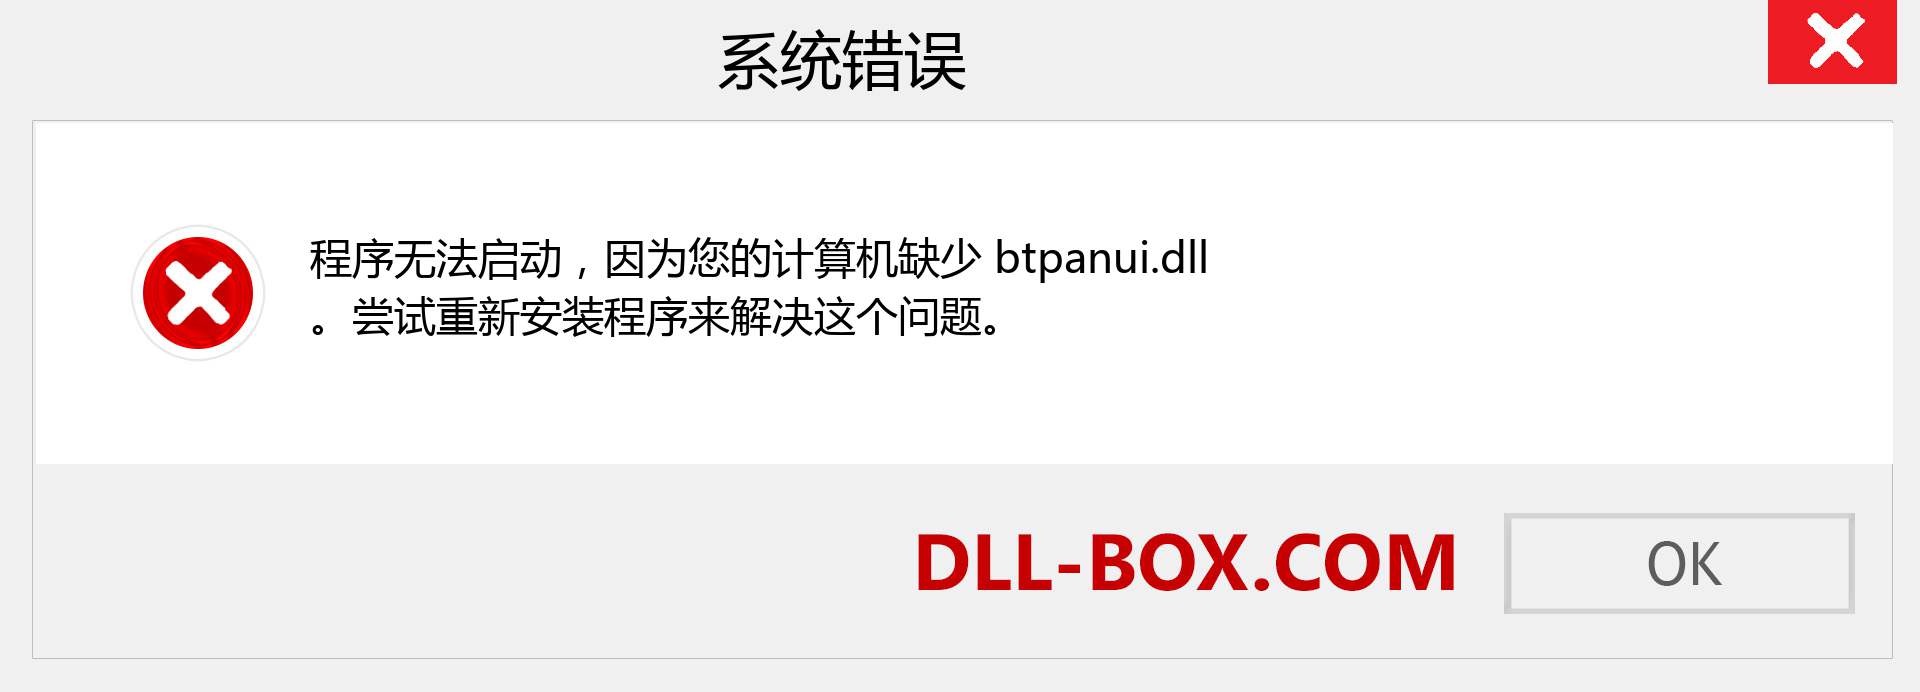 btpanui.dll 文件丢失？。 适用于 Windows 7、8、10 的下载 - 修复 Windows、照片、图像上的 btpanui dll 丢失错误